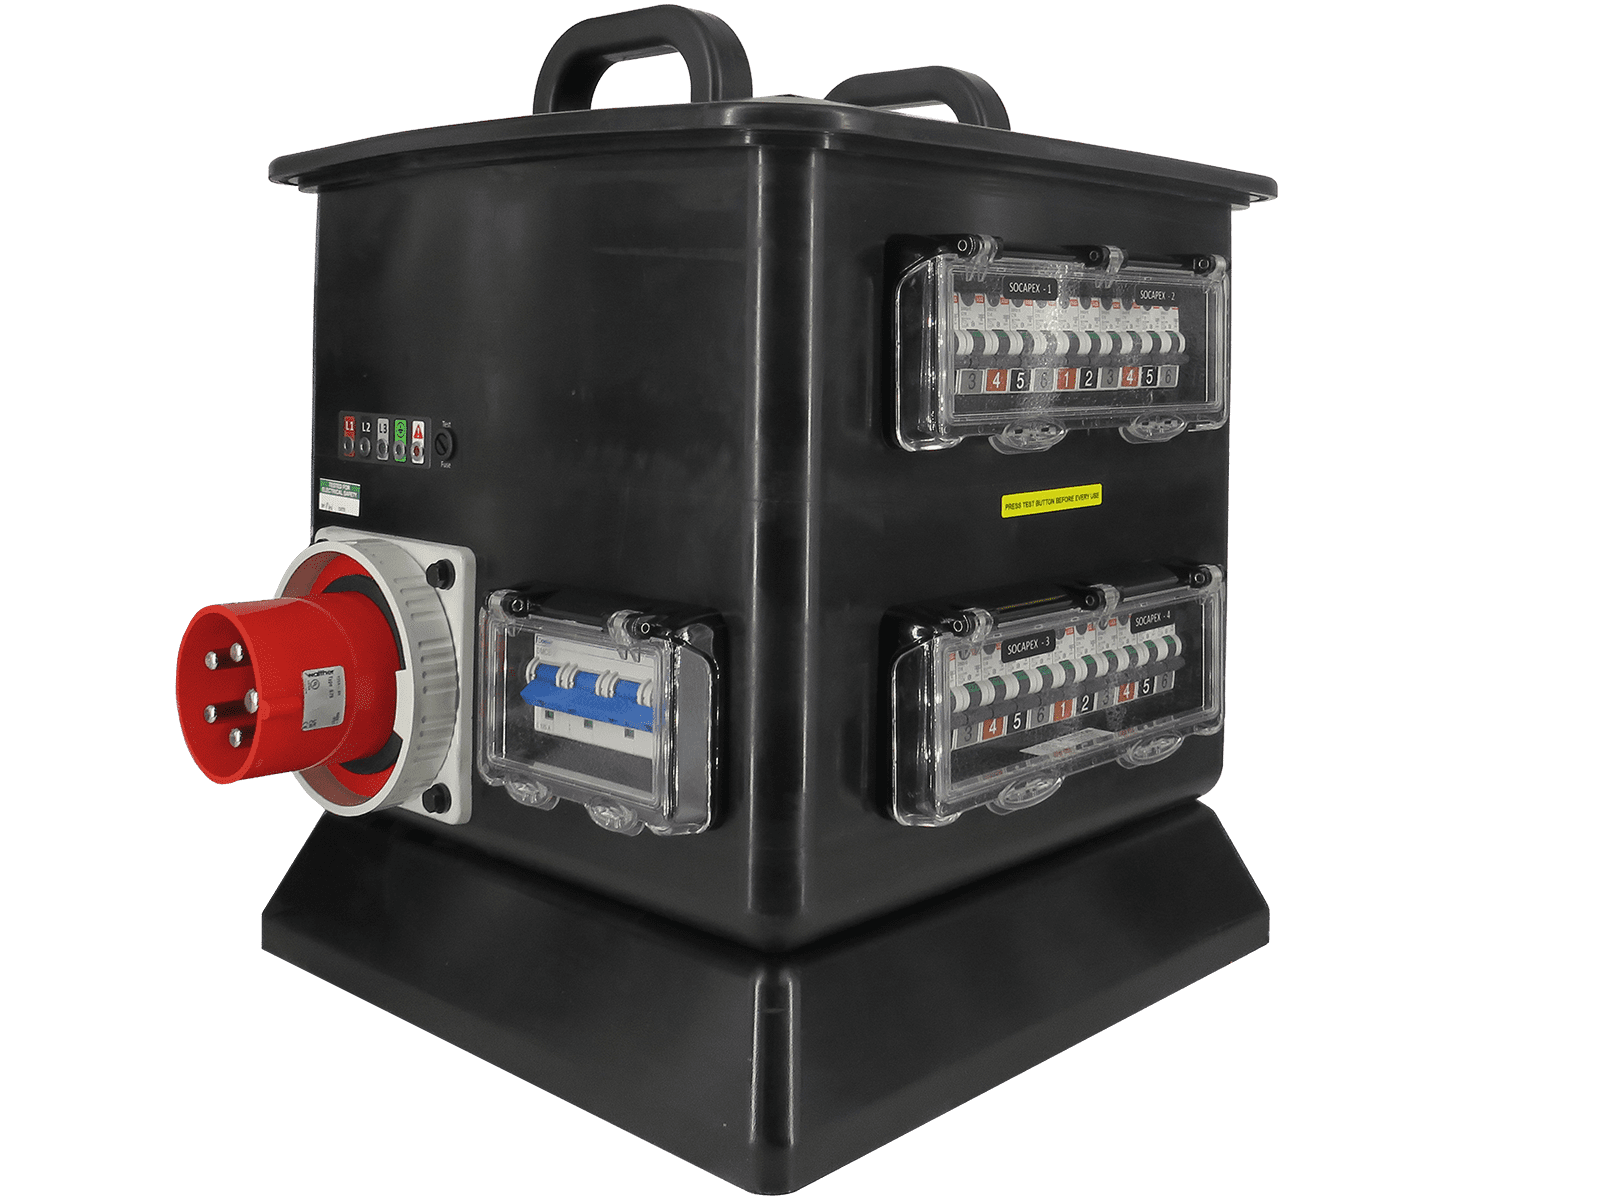 RUB3601 - 125A Power Distribution Box